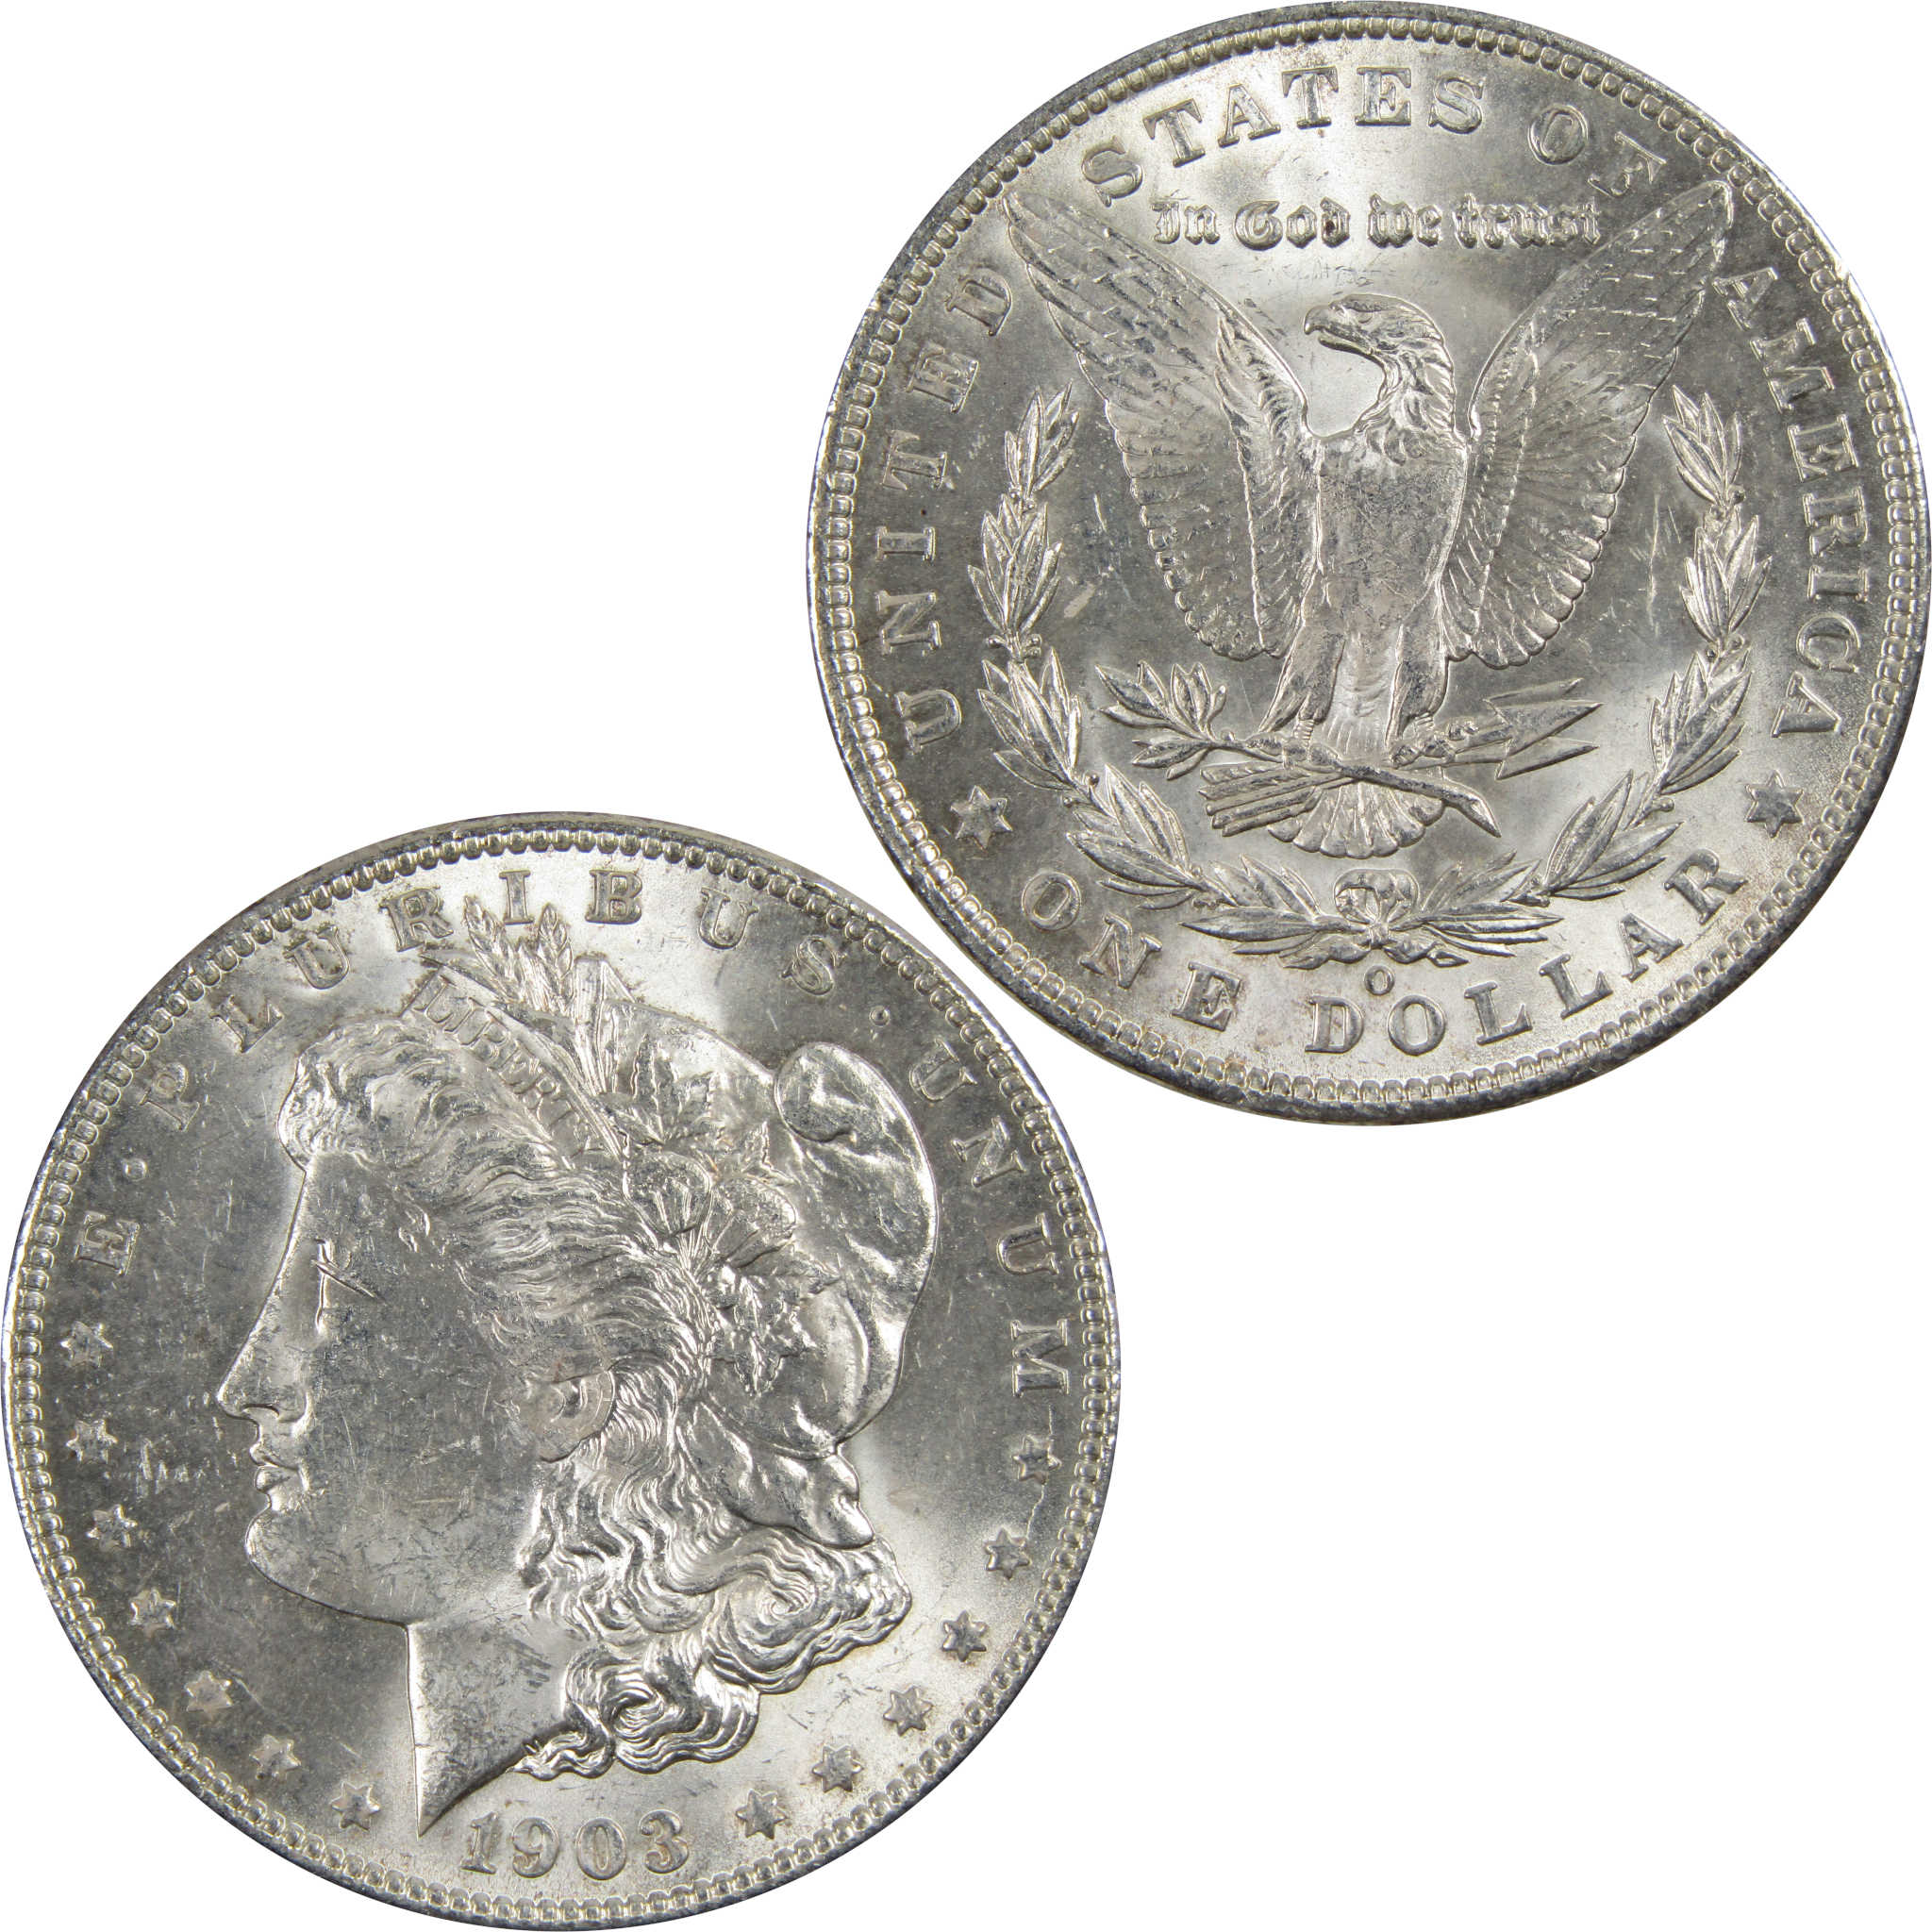 1903 O Morgan Dollar BU Choice Uncirculated 90% Silver $1 SKU:I7921 - Morgan coin - Morgan silver dollar - Morgan silver dollar for sale - Profile Coins &amp; Collectibles